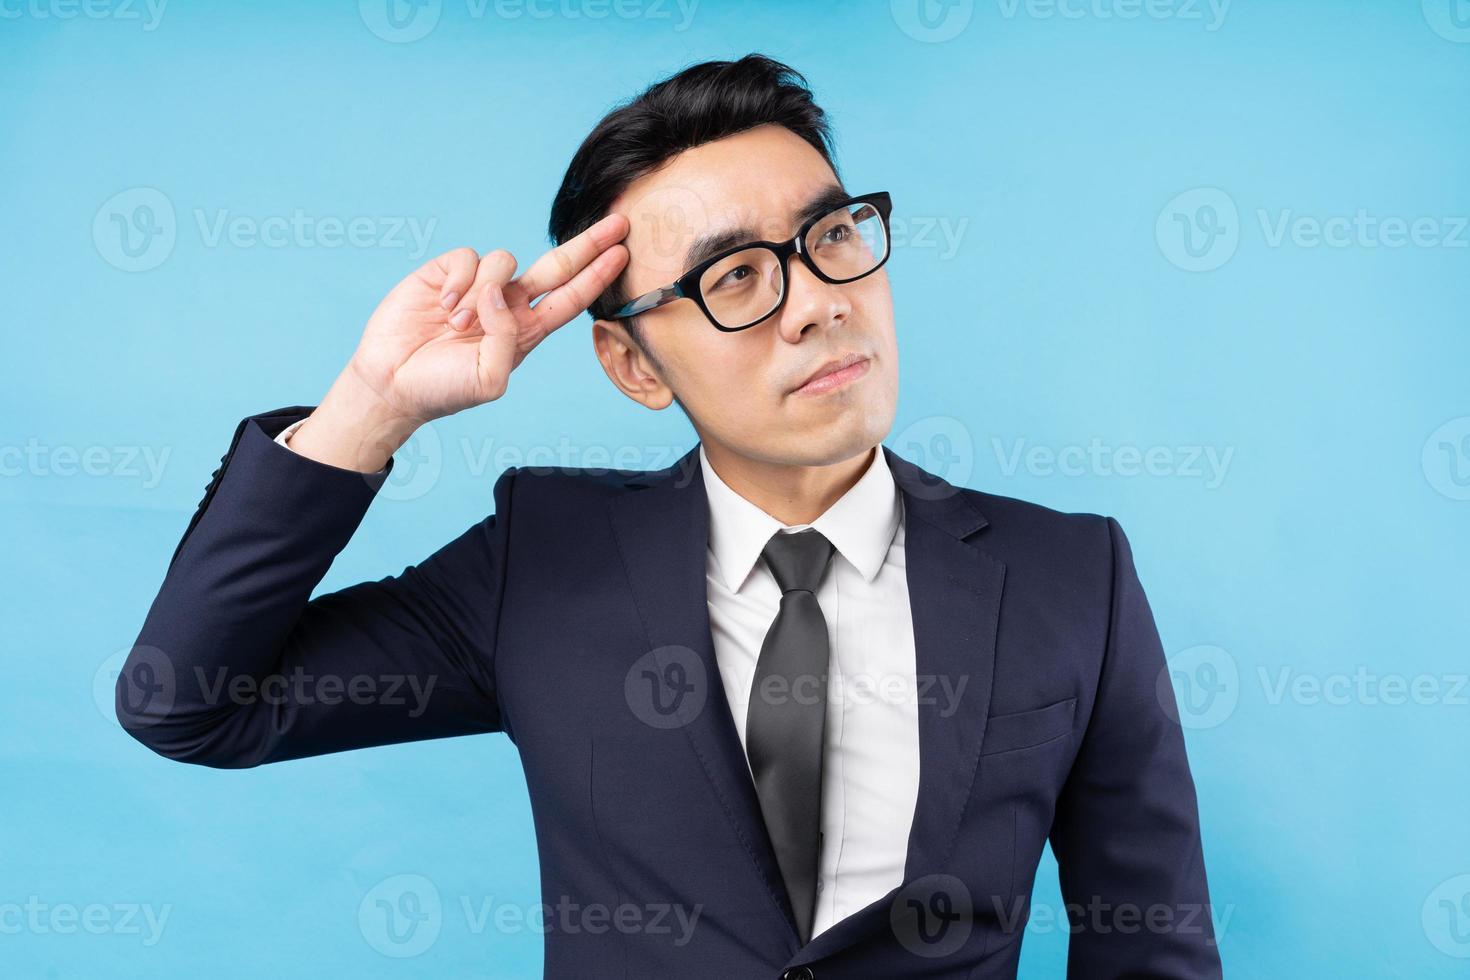 homme d'affaires asiatique pensant au travail sur fond bleu photo